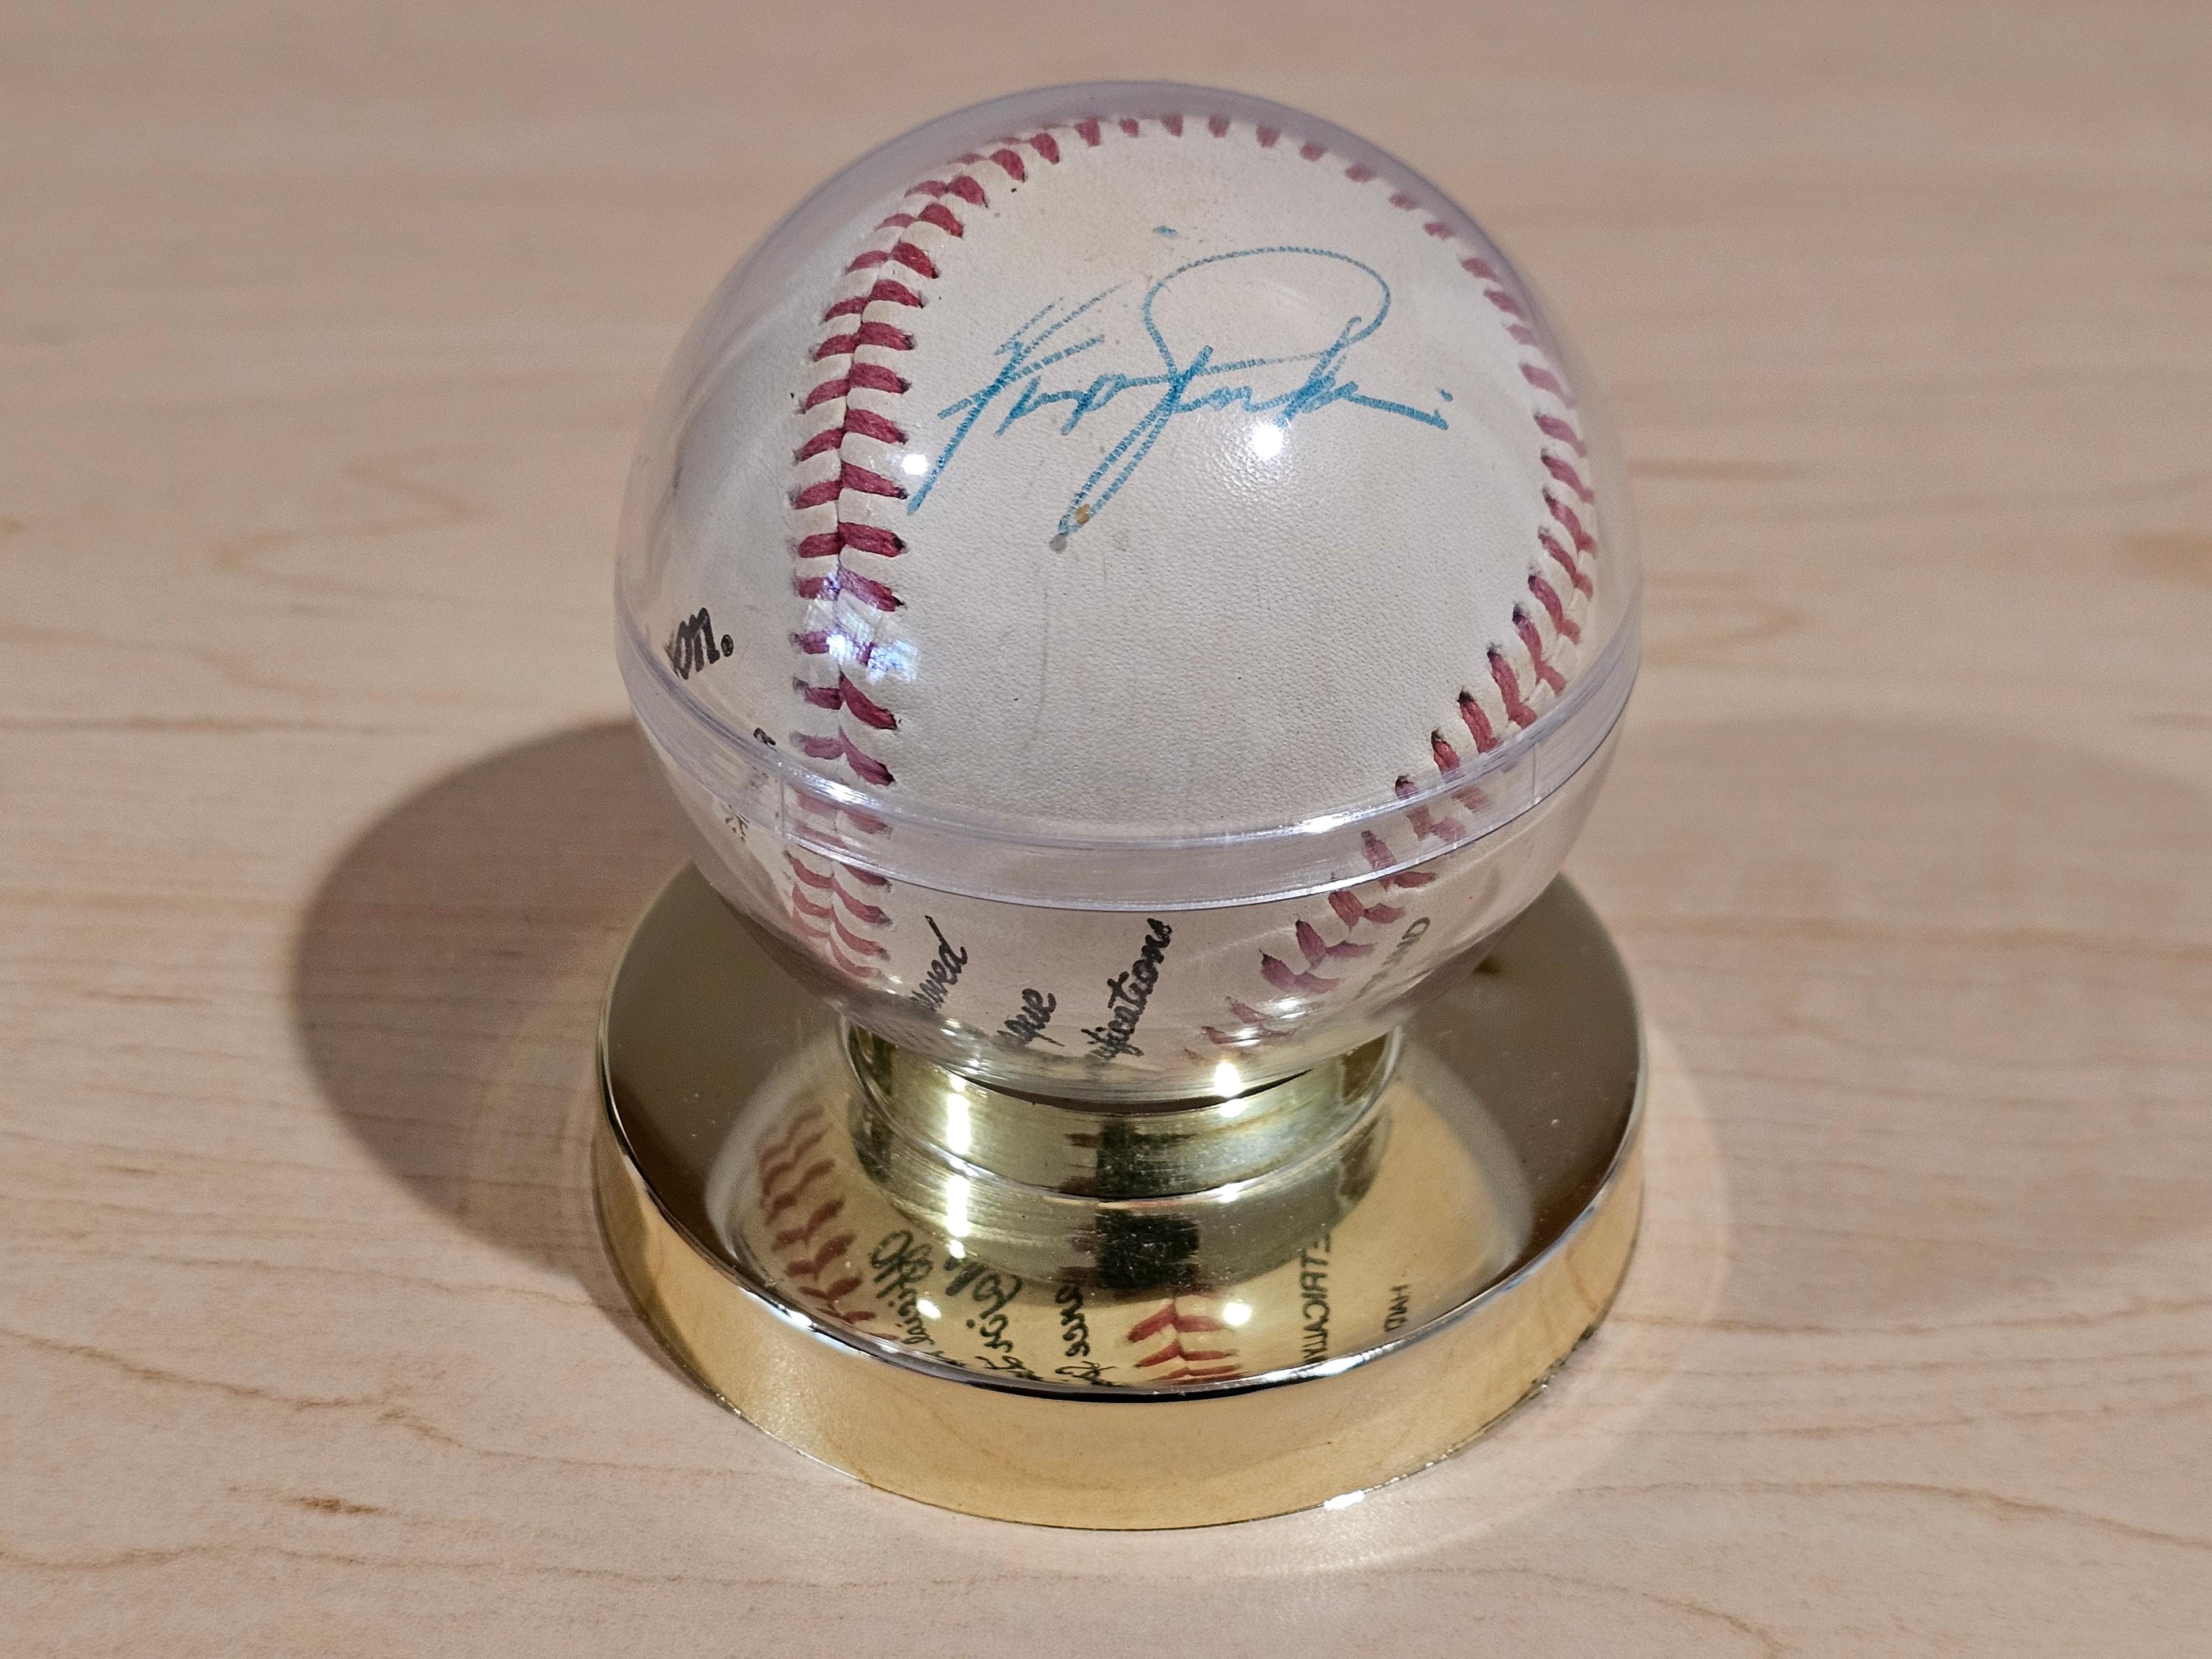 Ferguson Jenkins Signed Baseball in Display Case